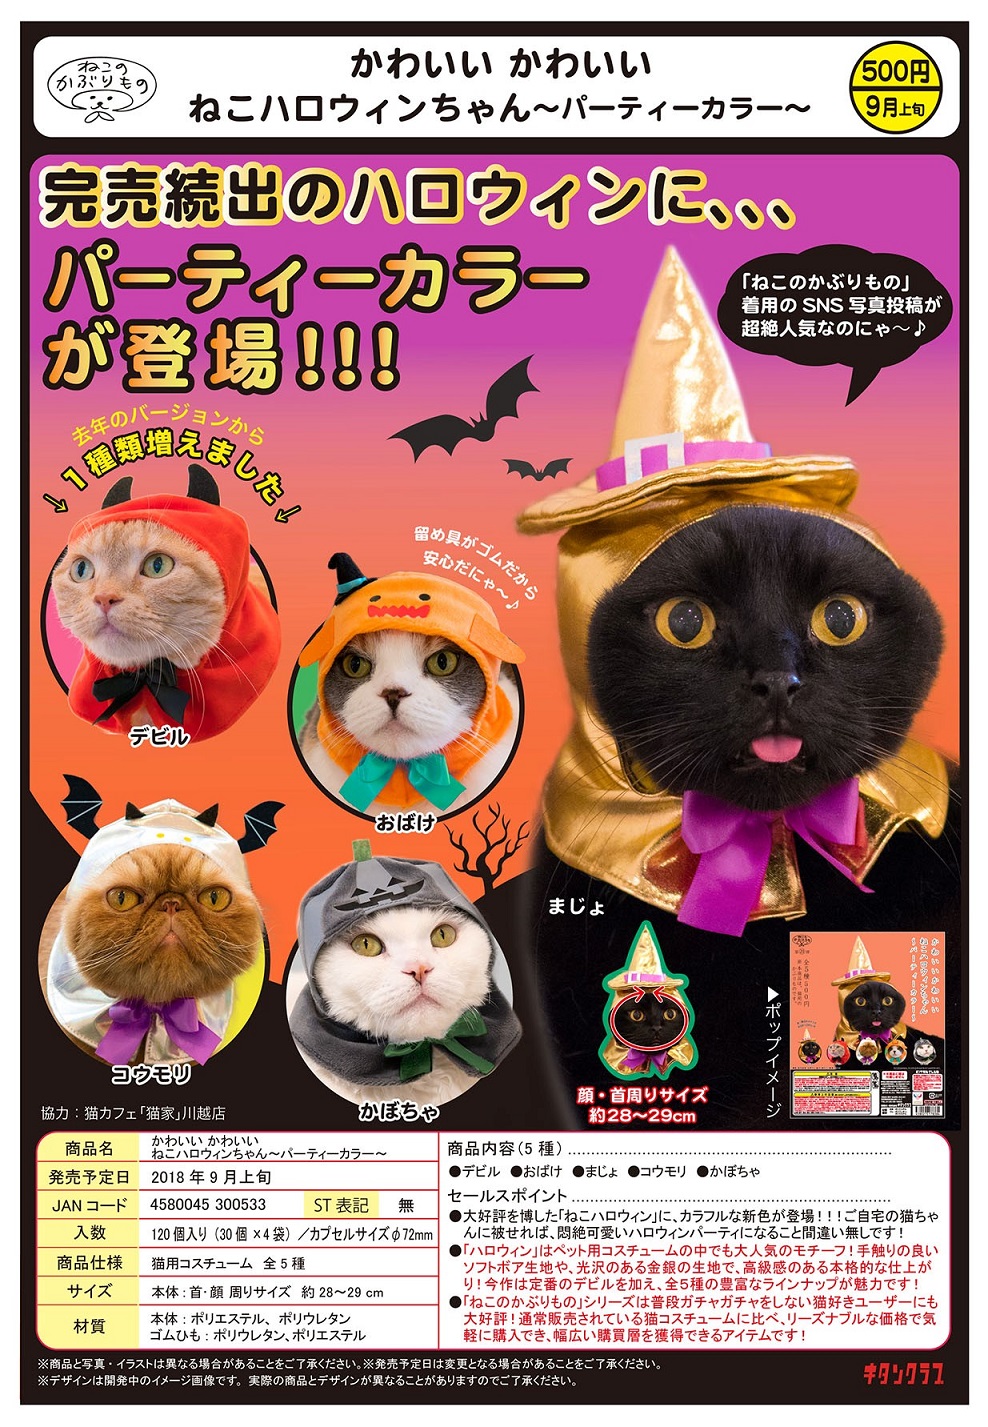 500日元扭蛋 可爱猫猫头巾 万圣节派对Ver. 全5种 300533